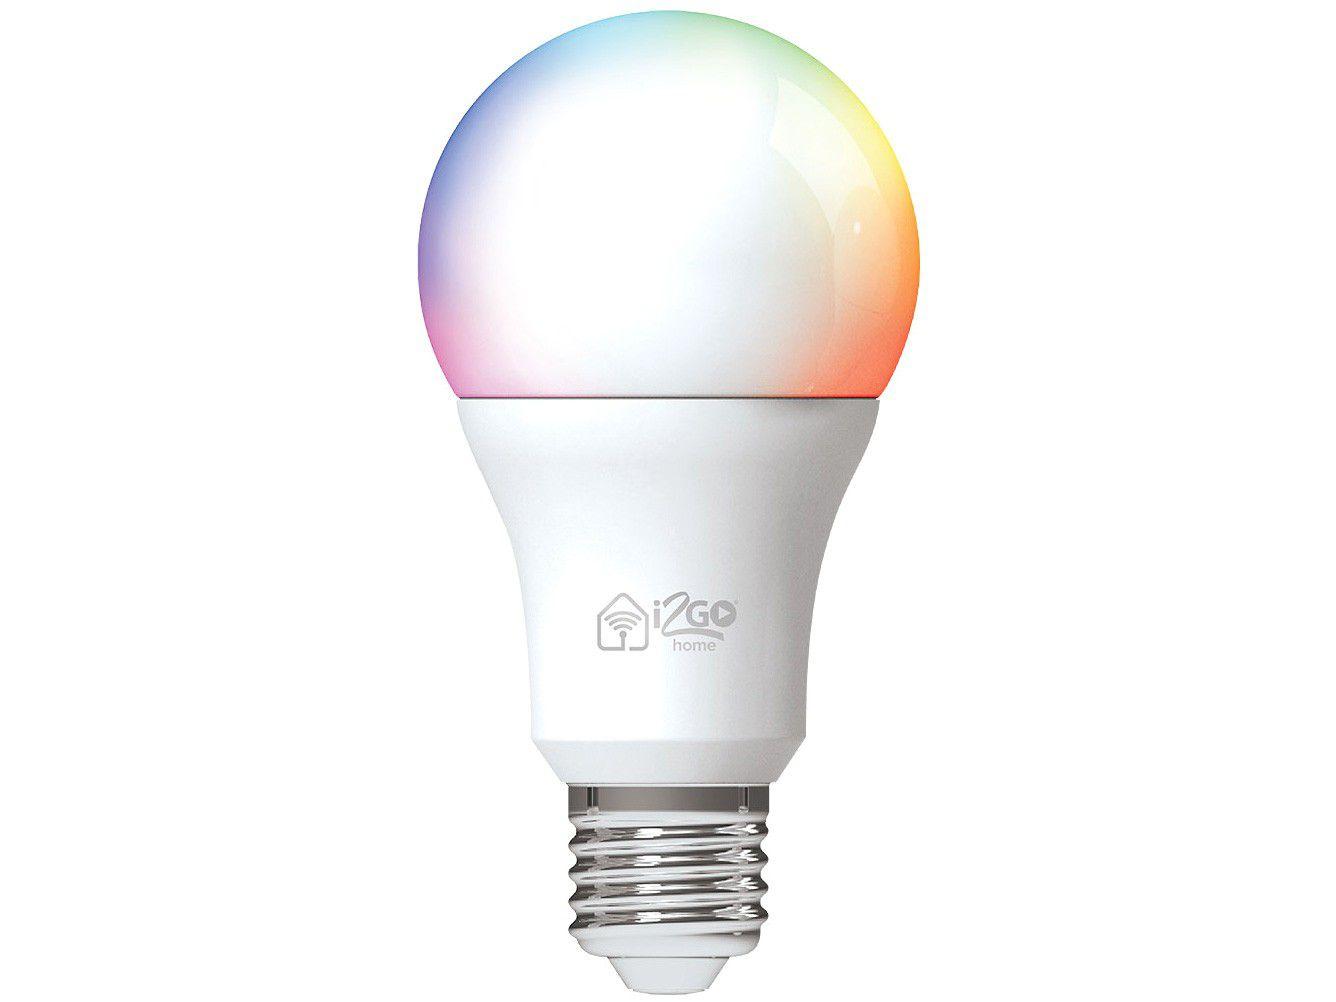 Lâmpada Inteligente Smart Lamp I2GO Home Wi-Fi LED 10W Bivolt – Compatível com Alexa